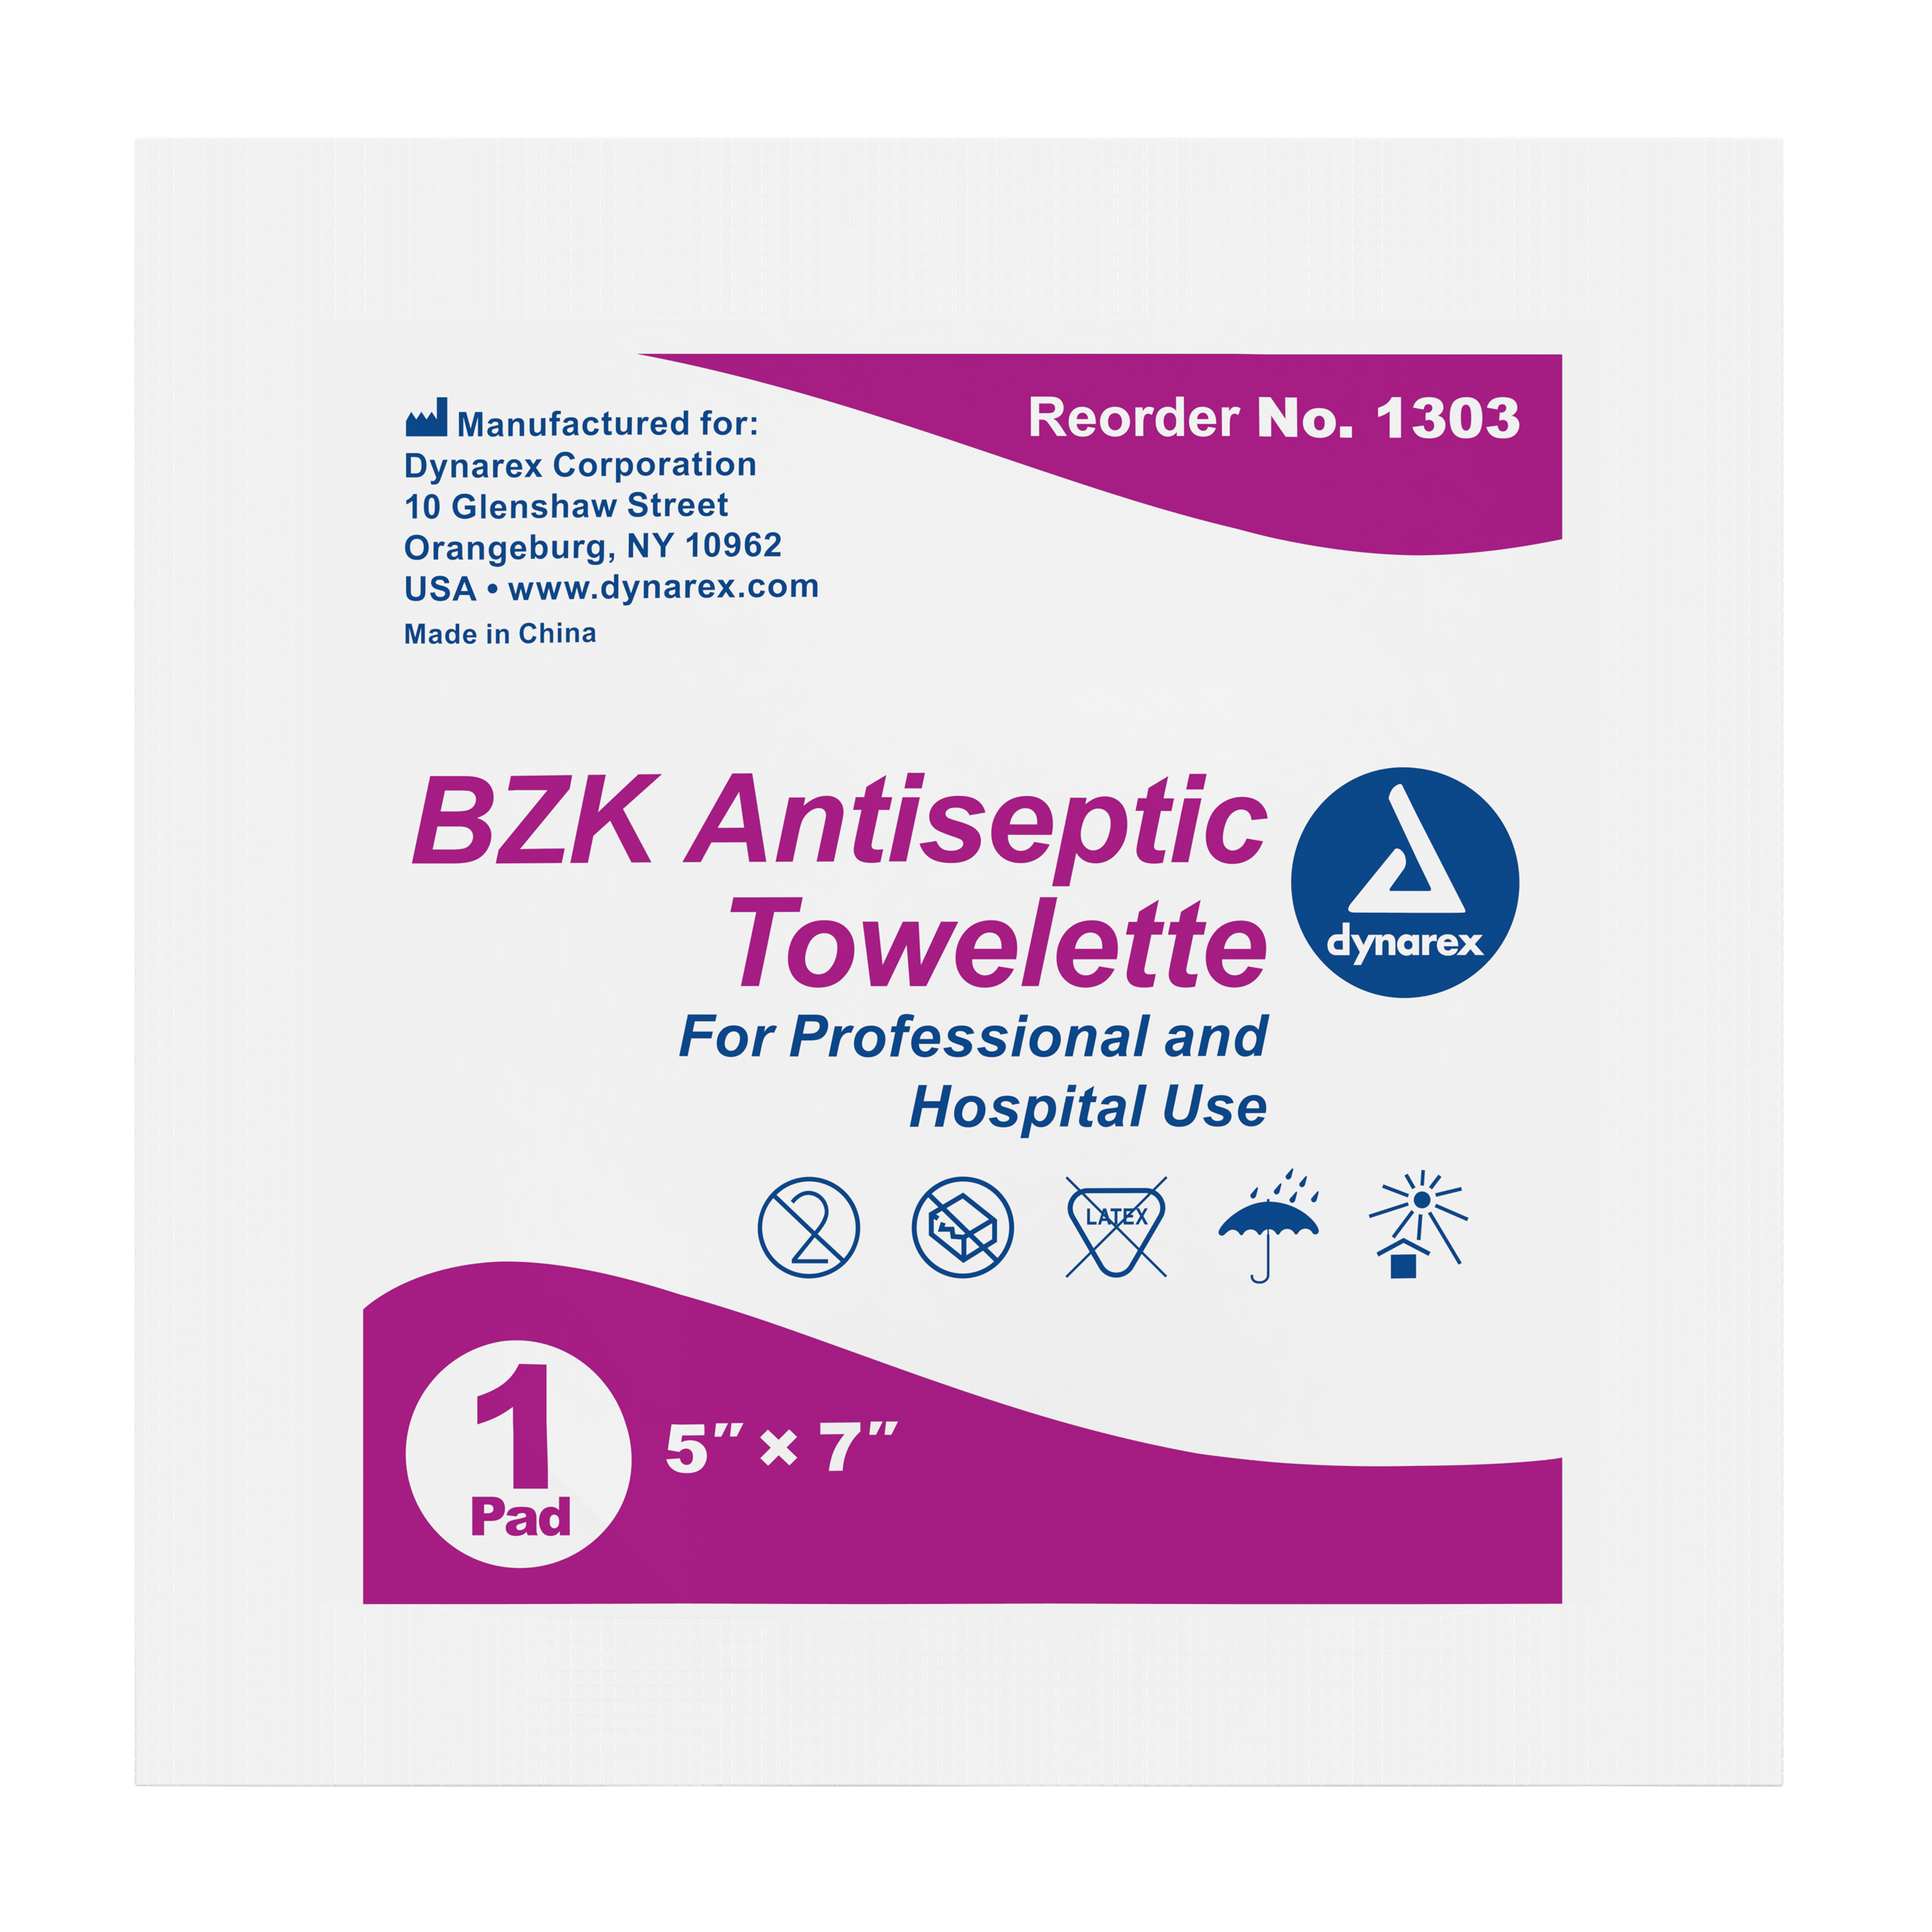 BZK Antiseptic Towelettes, 5